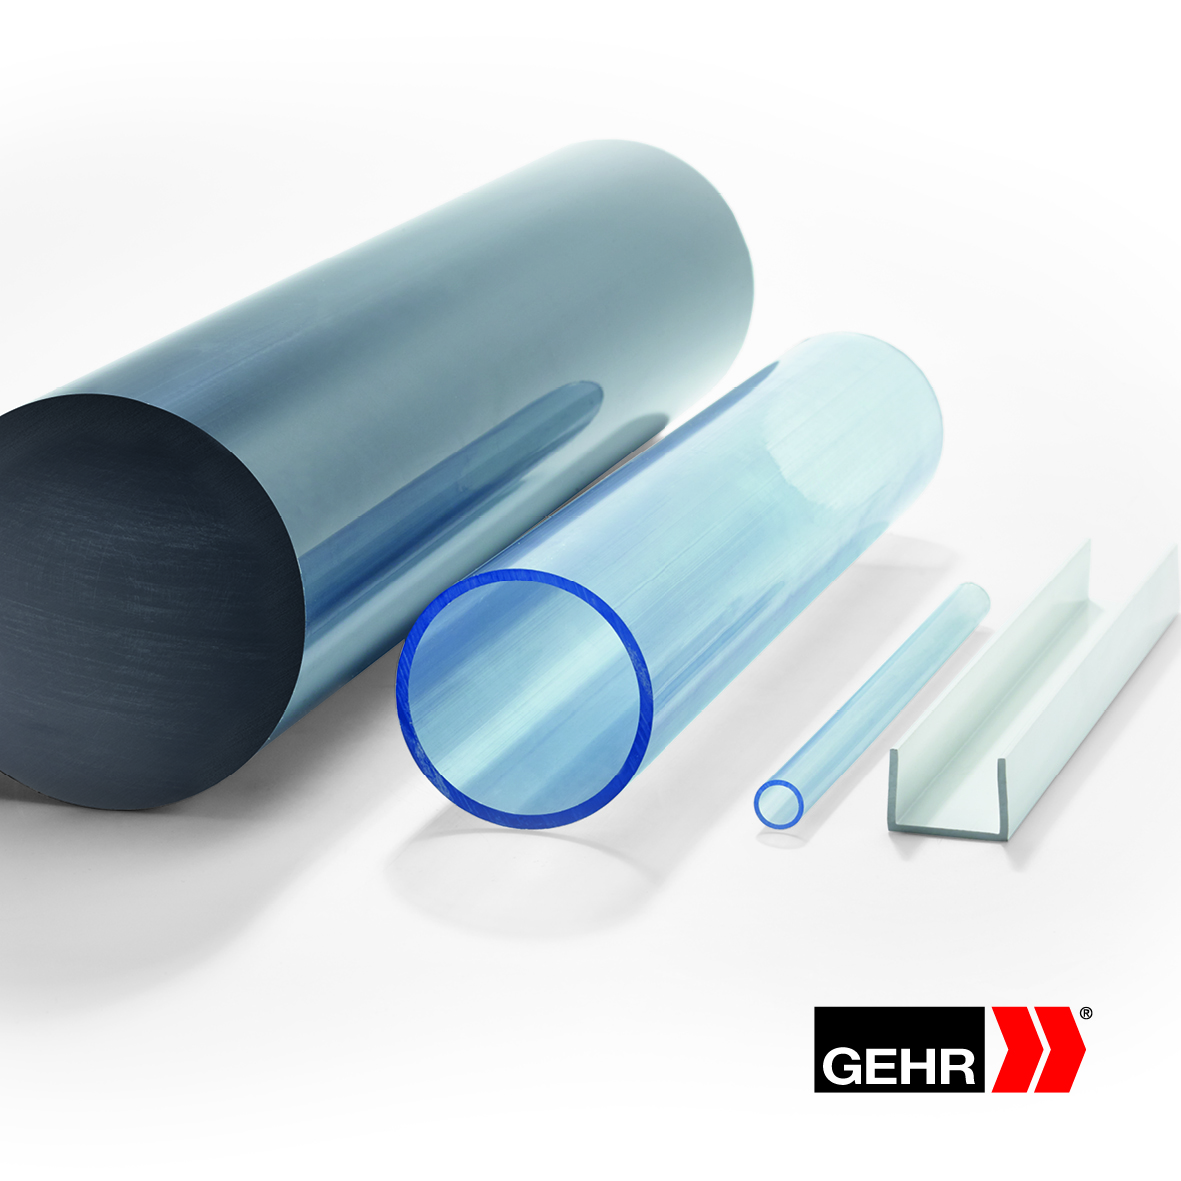 GEHR PVC-U square tubes 20 x 20 x 1.5 mm white